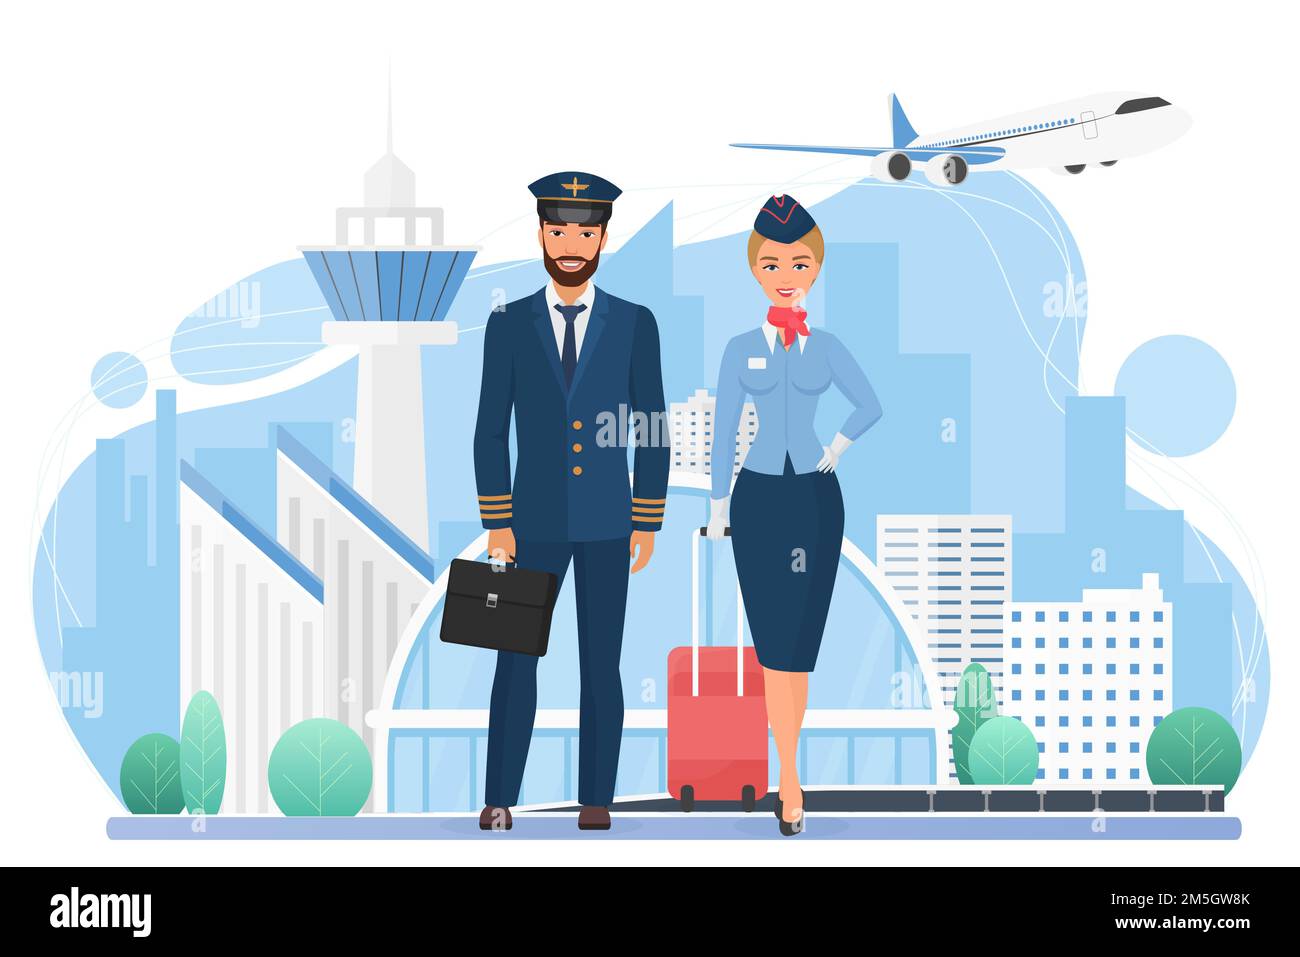 Flugzeugbesatzung Menschen in modernen Flughafen Vektor-Illustration. Cartoons Stewardess und Pilotenfiguren stehen zusammen, internationale Fluggesellschaften stehen zur Verfügung Stock Vektor